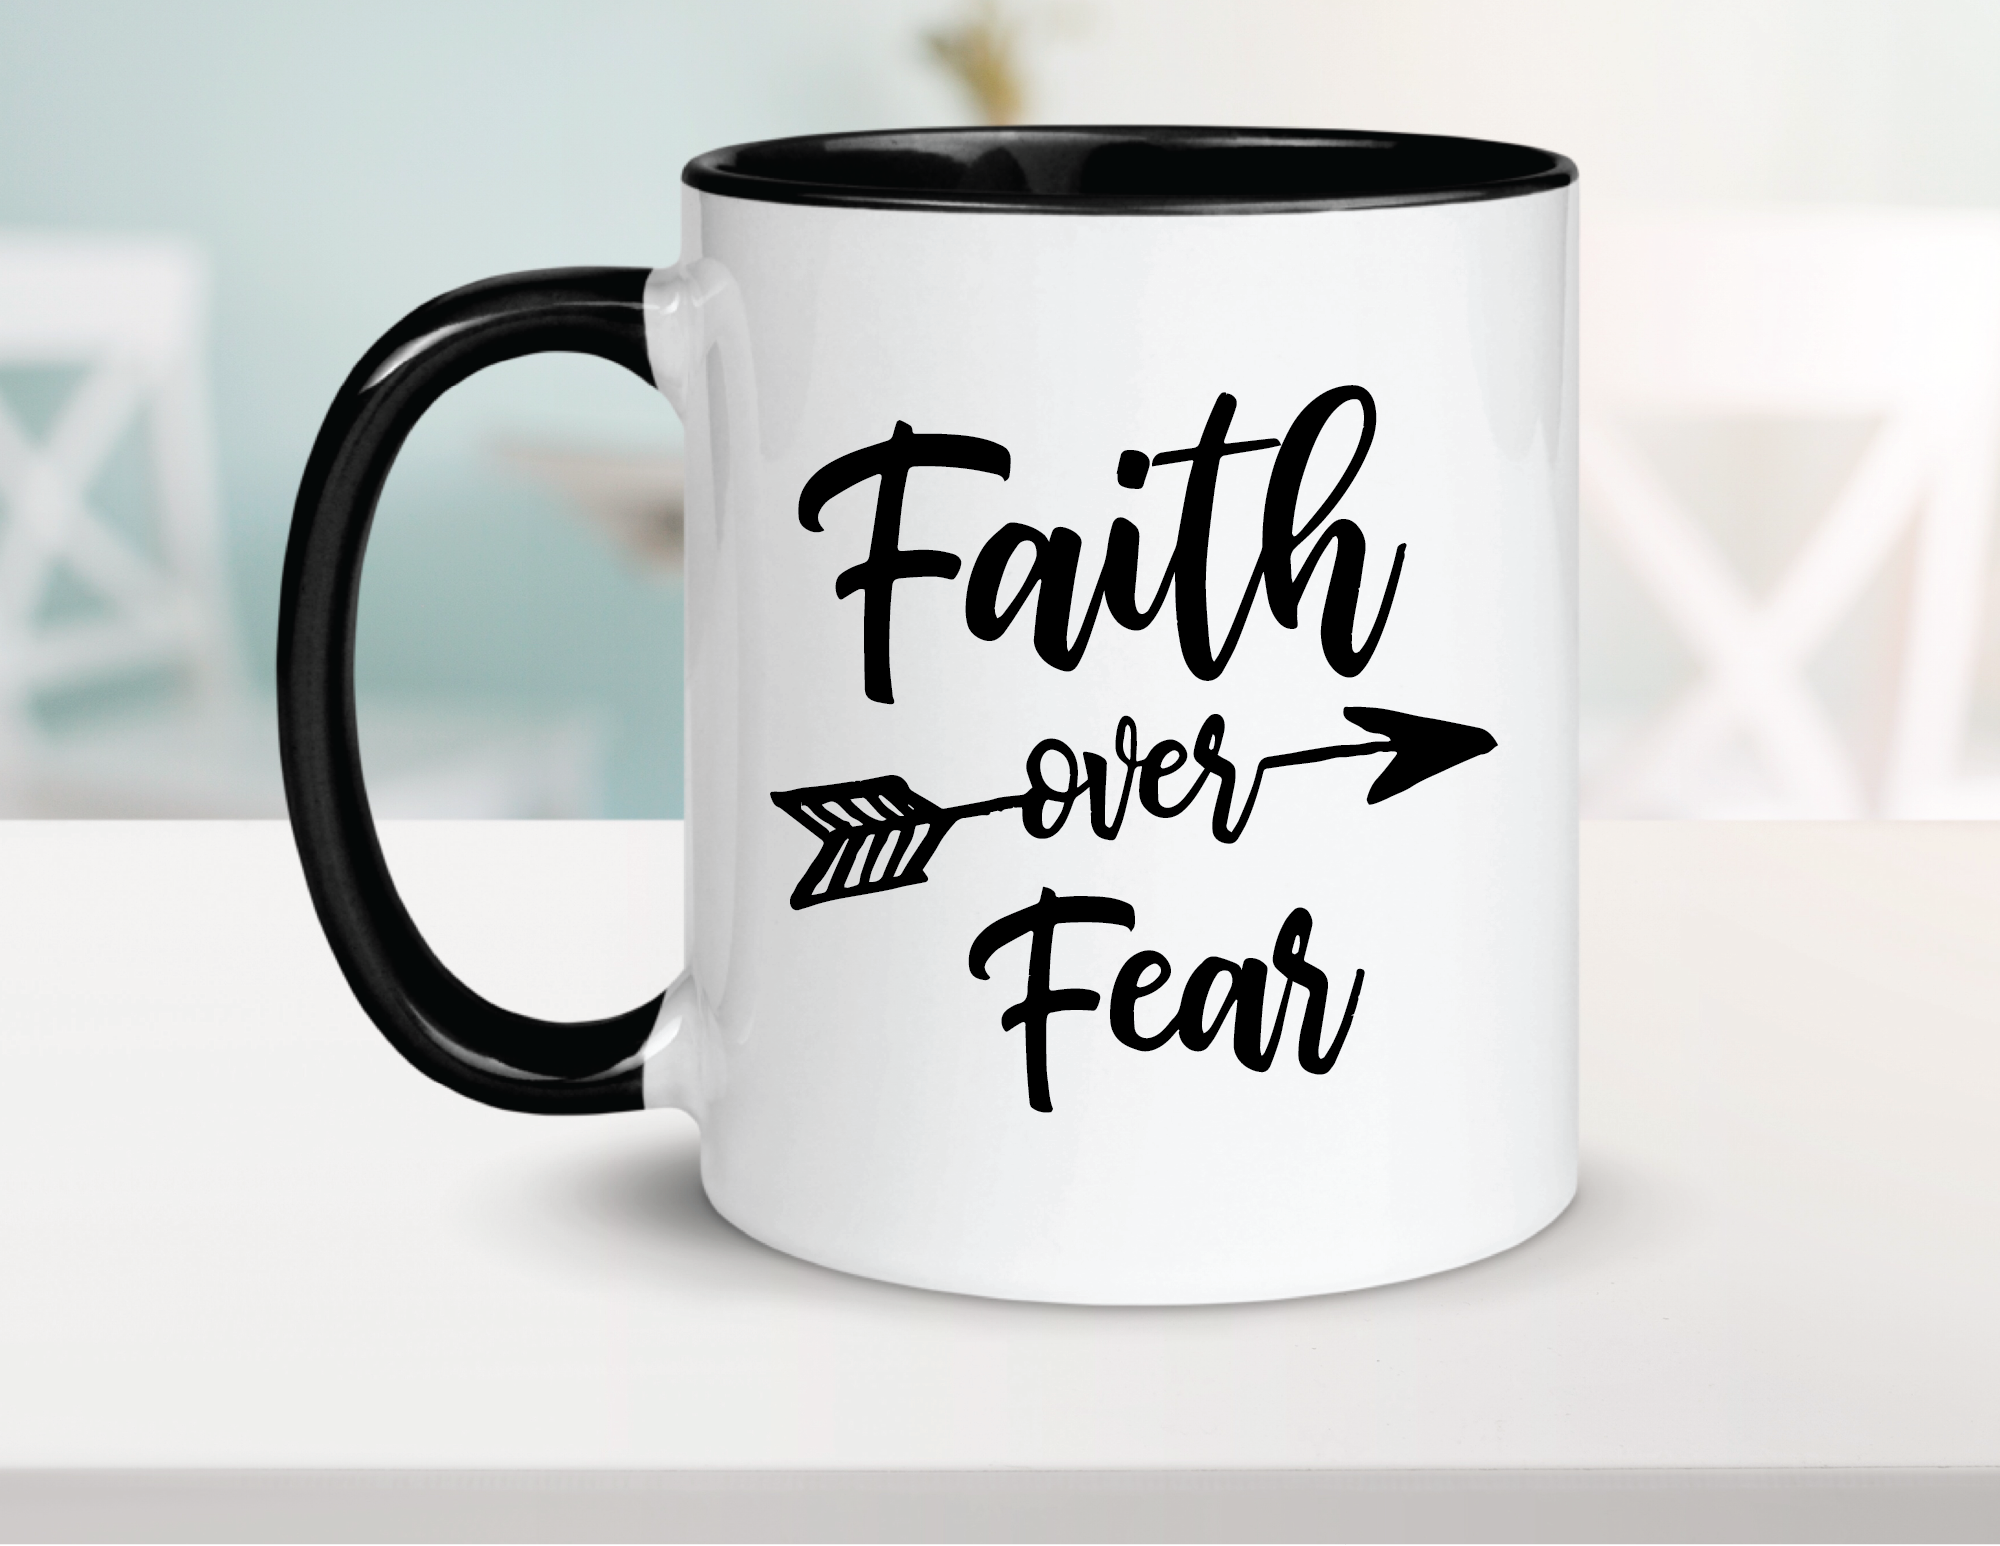 Faith Over Fear Ceramic Coffee Mug 15oz